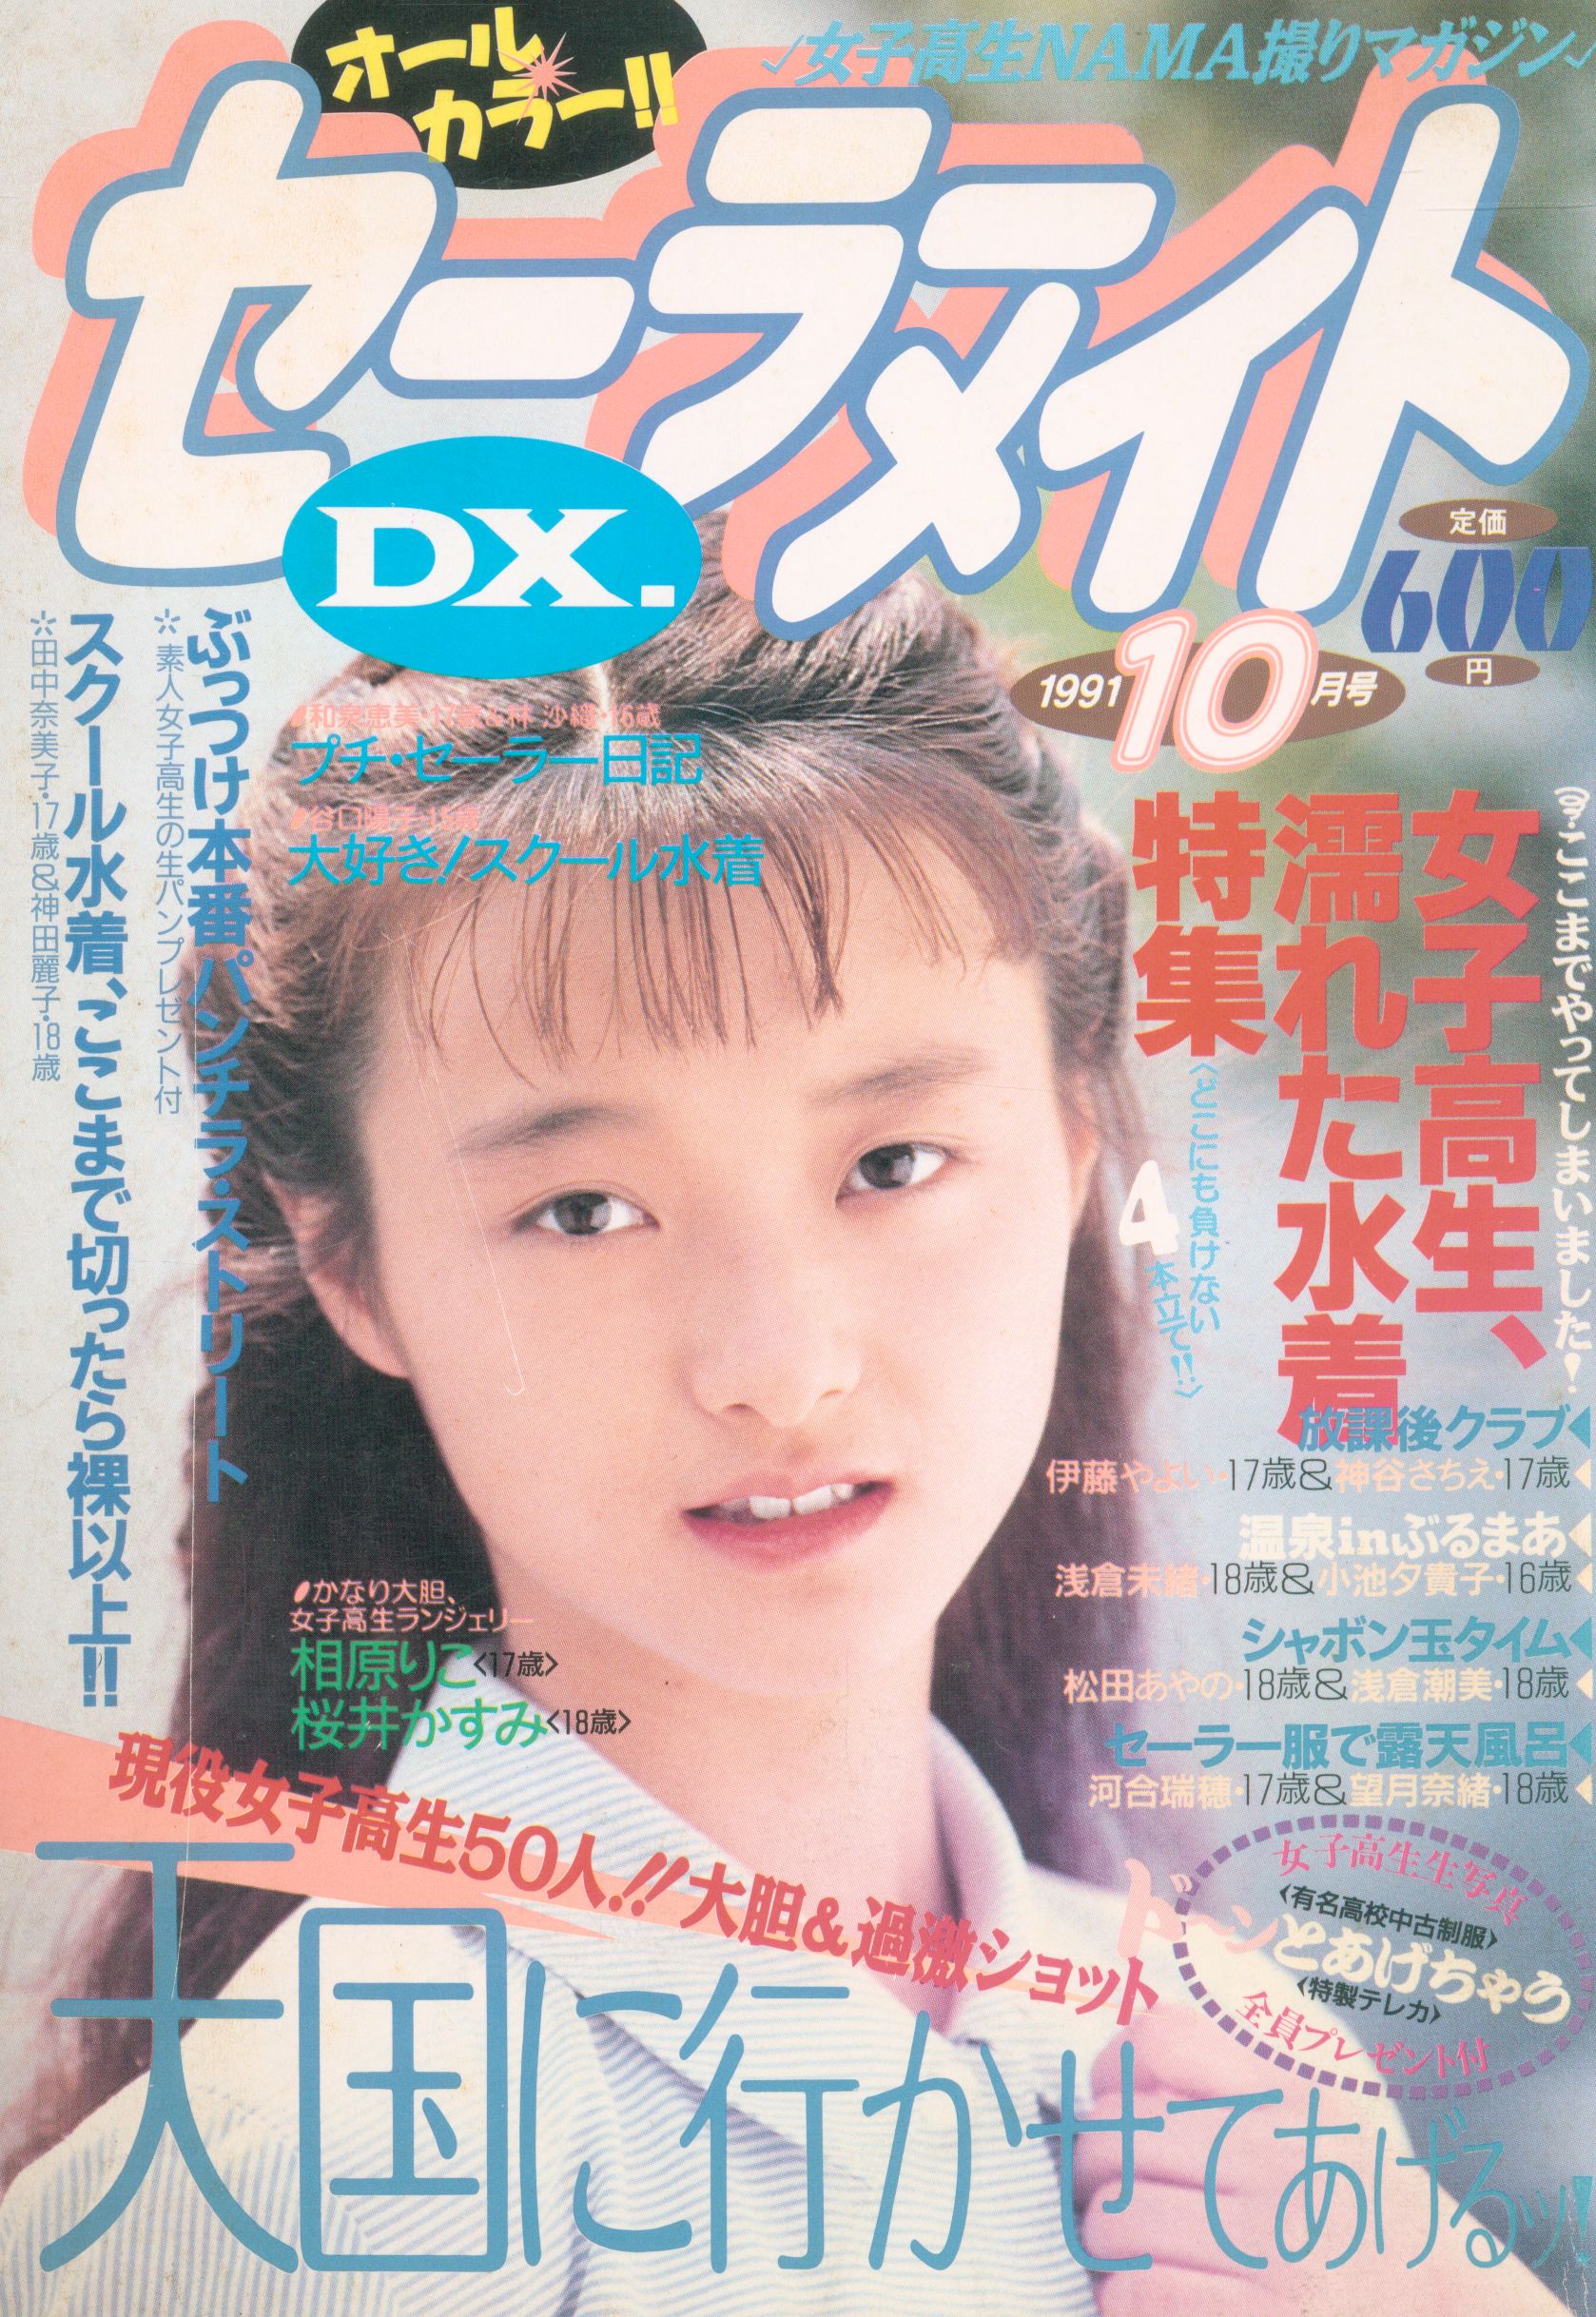 雑誌】セーラーメイトDX 1993年12月号 東京三世社 - 雑誌